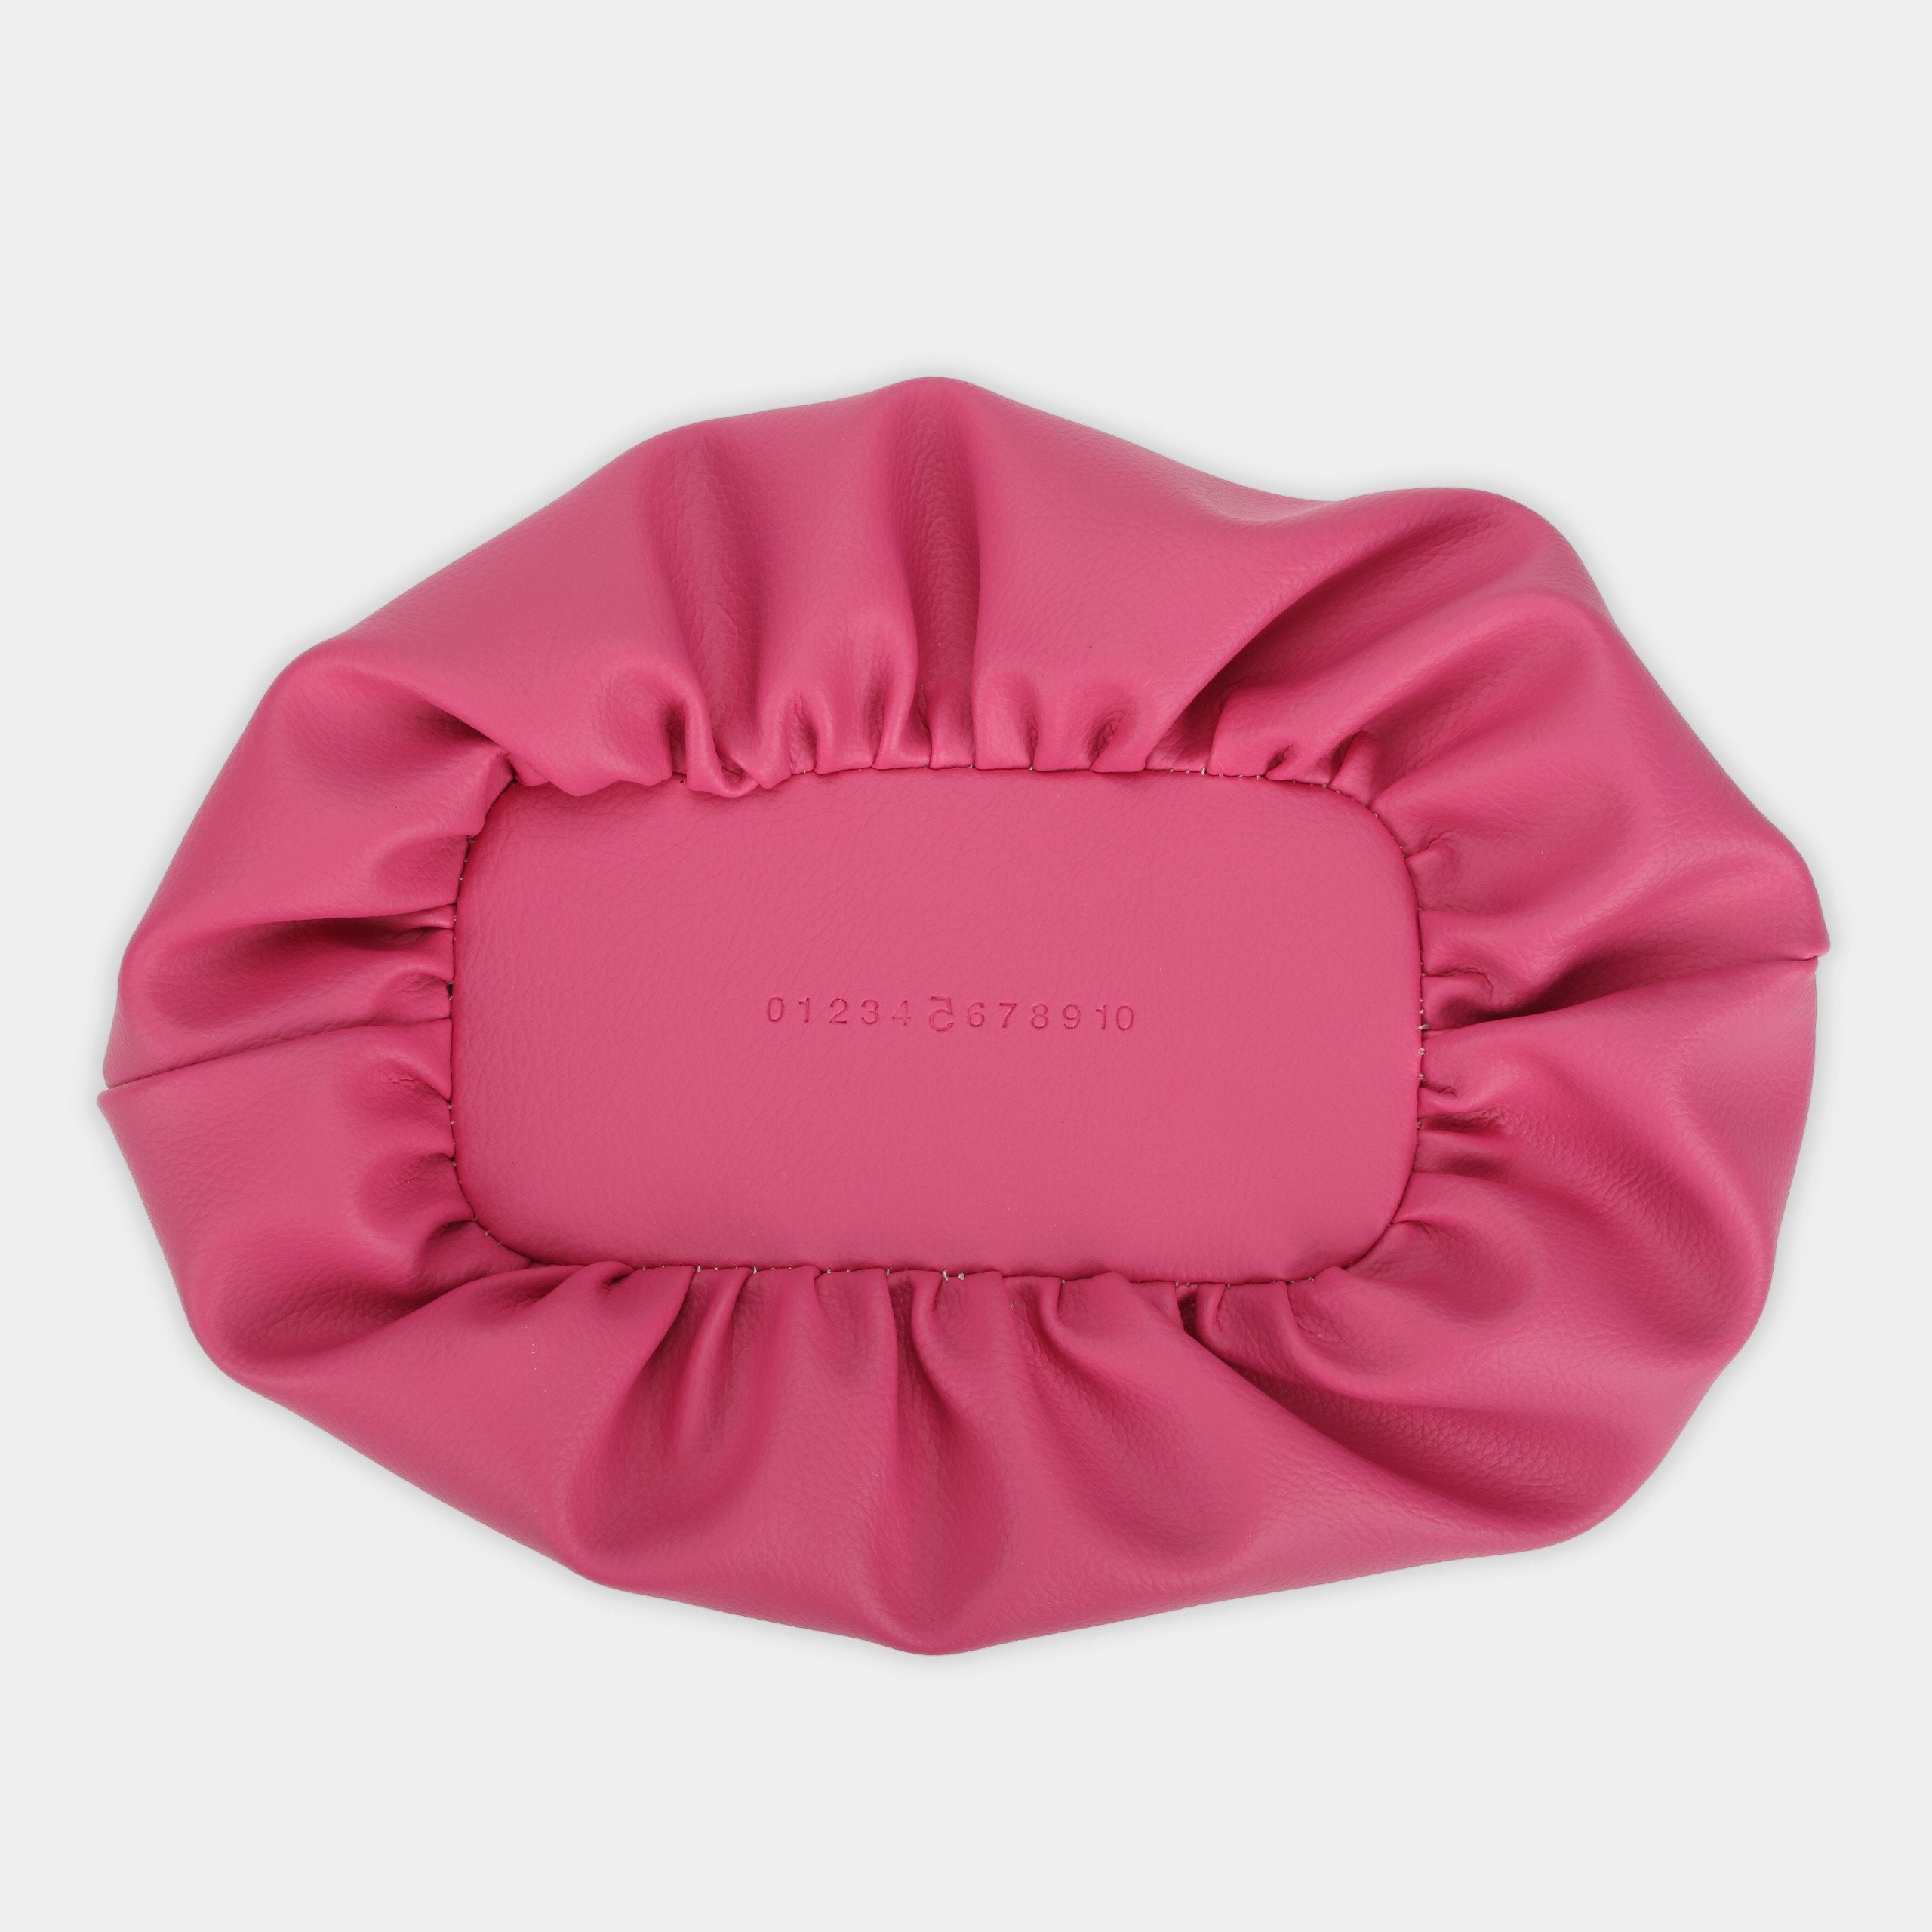 Flower M (medium) handbag in pink